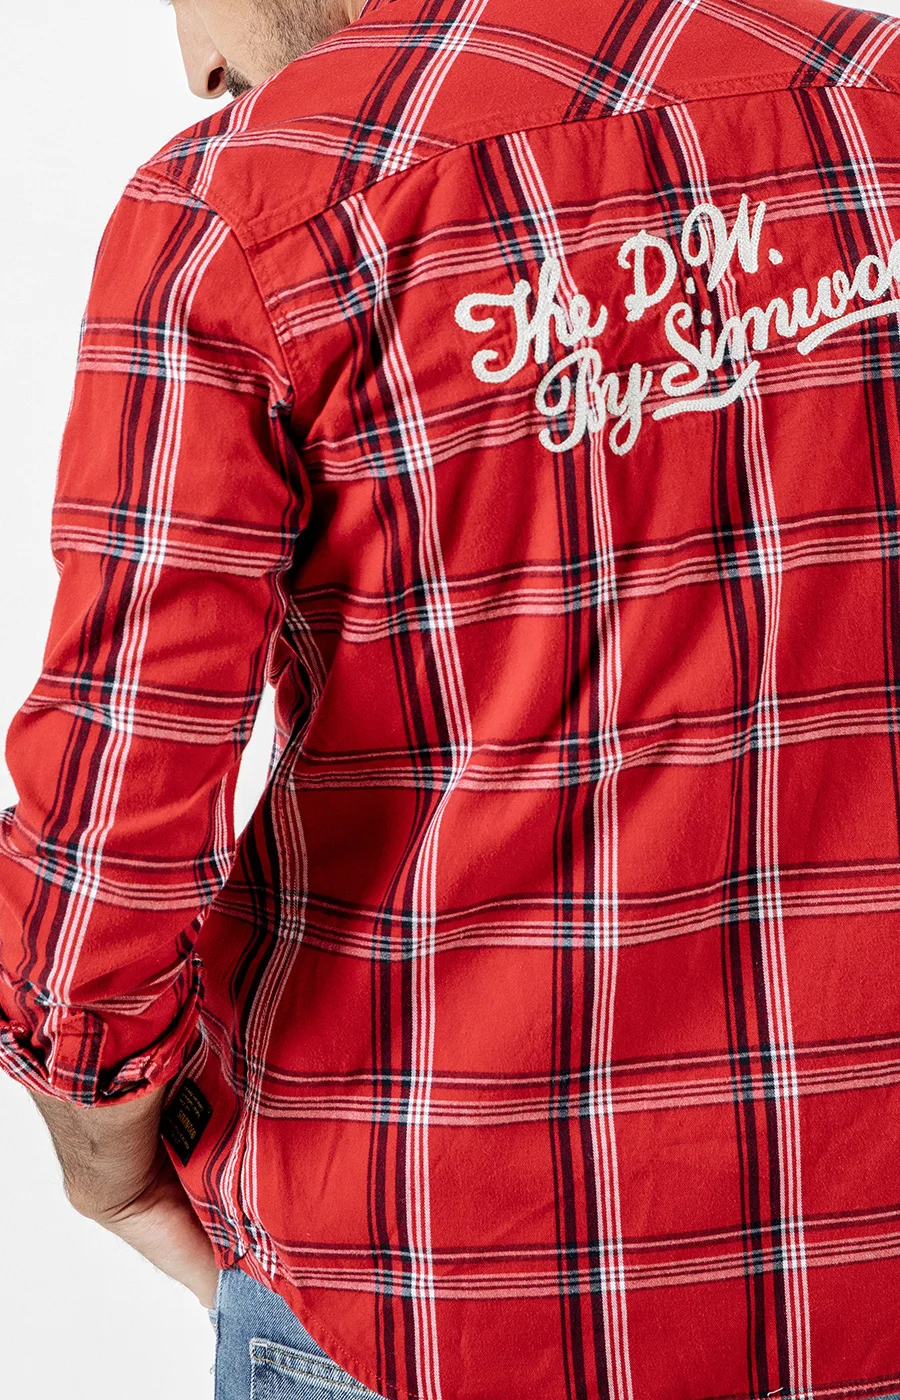 Мужская клетчатая рубашка SIMWOOD, повседневная рубашка с вышитой надписью, брендовая одежда высокого качества, новая модель 190205 на осень